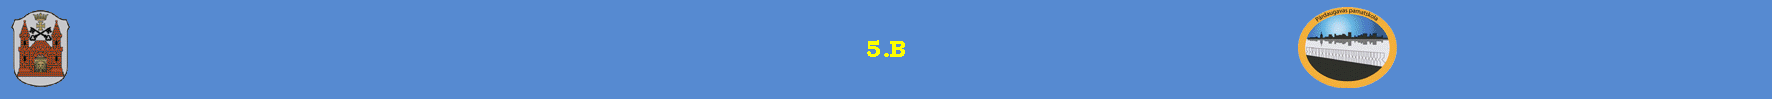 5.B